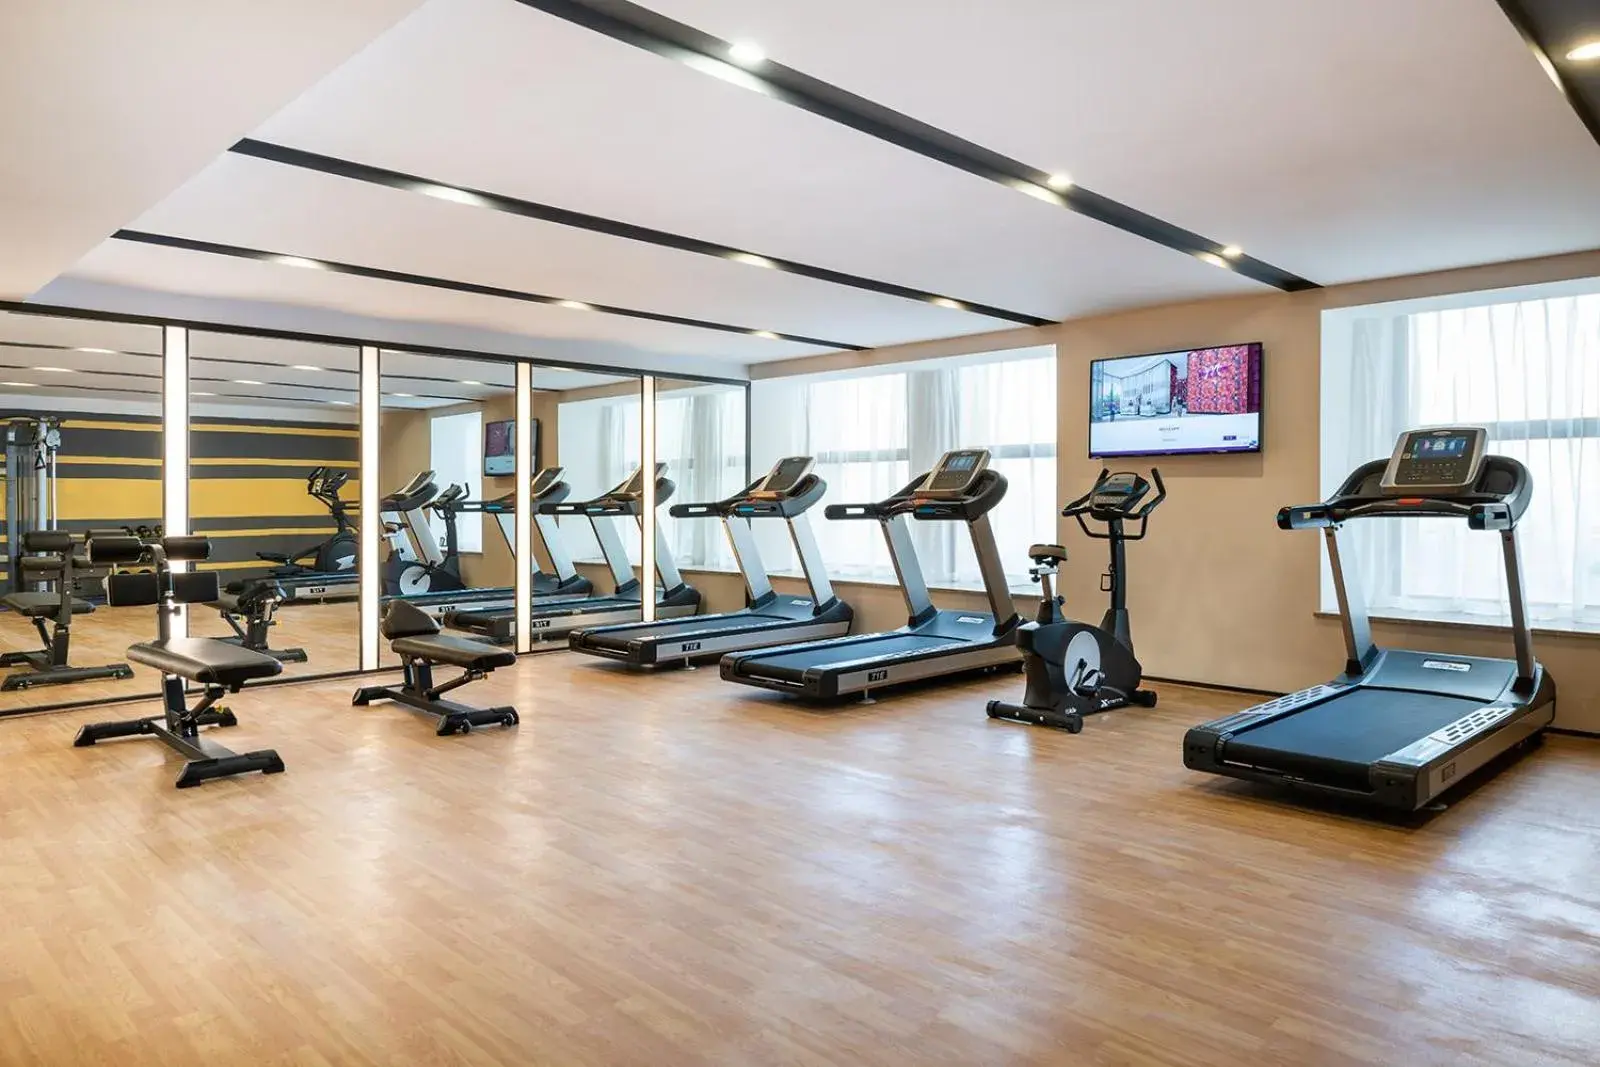 Fitness centre/facilities, Fitness Center/Facilities in Mercure Chengdu Huapaifang